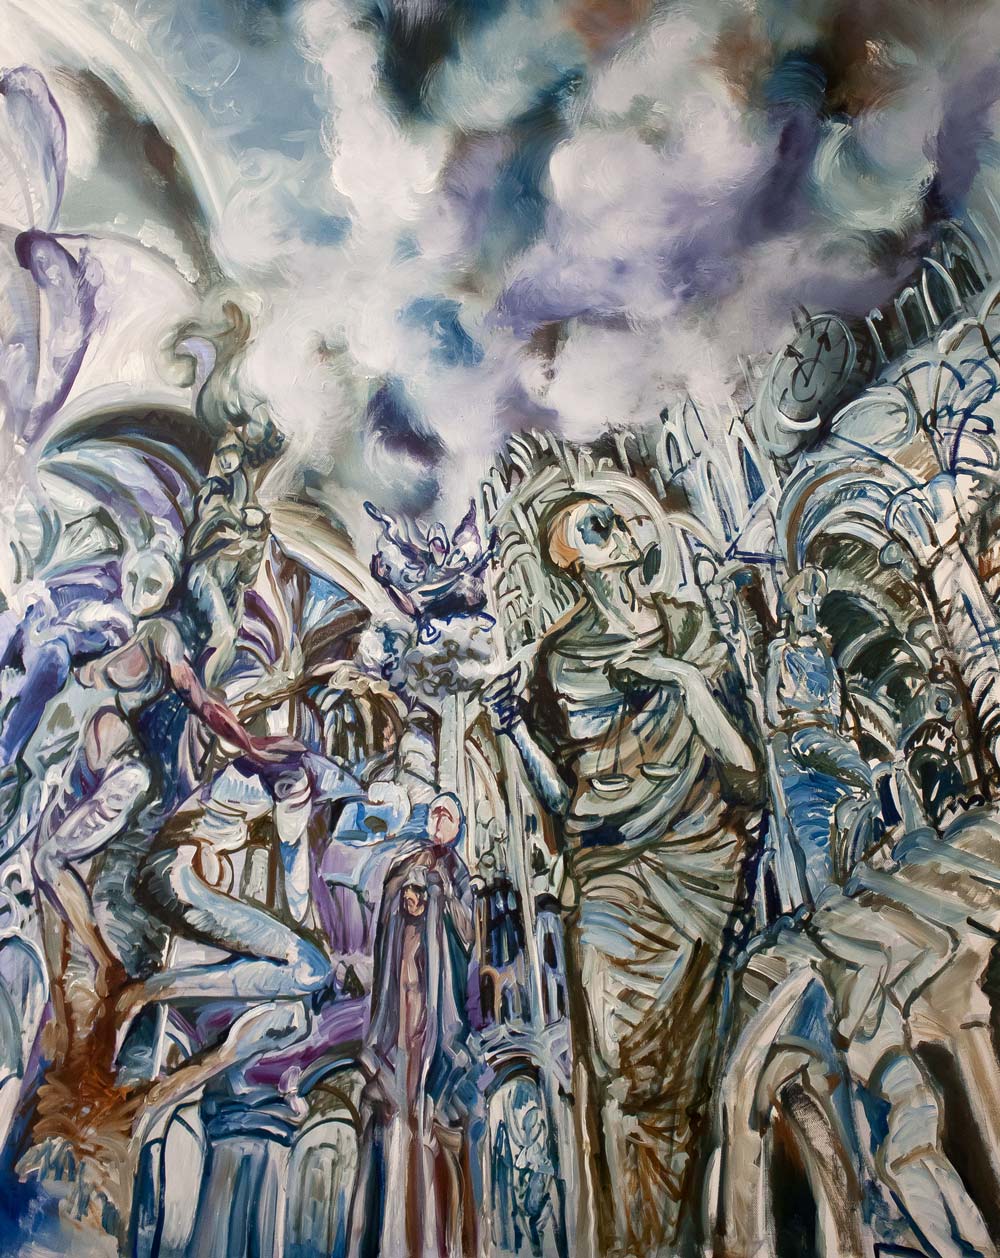 Gemälde Auf der Suche nach dem Himmelstor,100 x 80 cm, Öl auf Leinwand, 2020 Teresidi